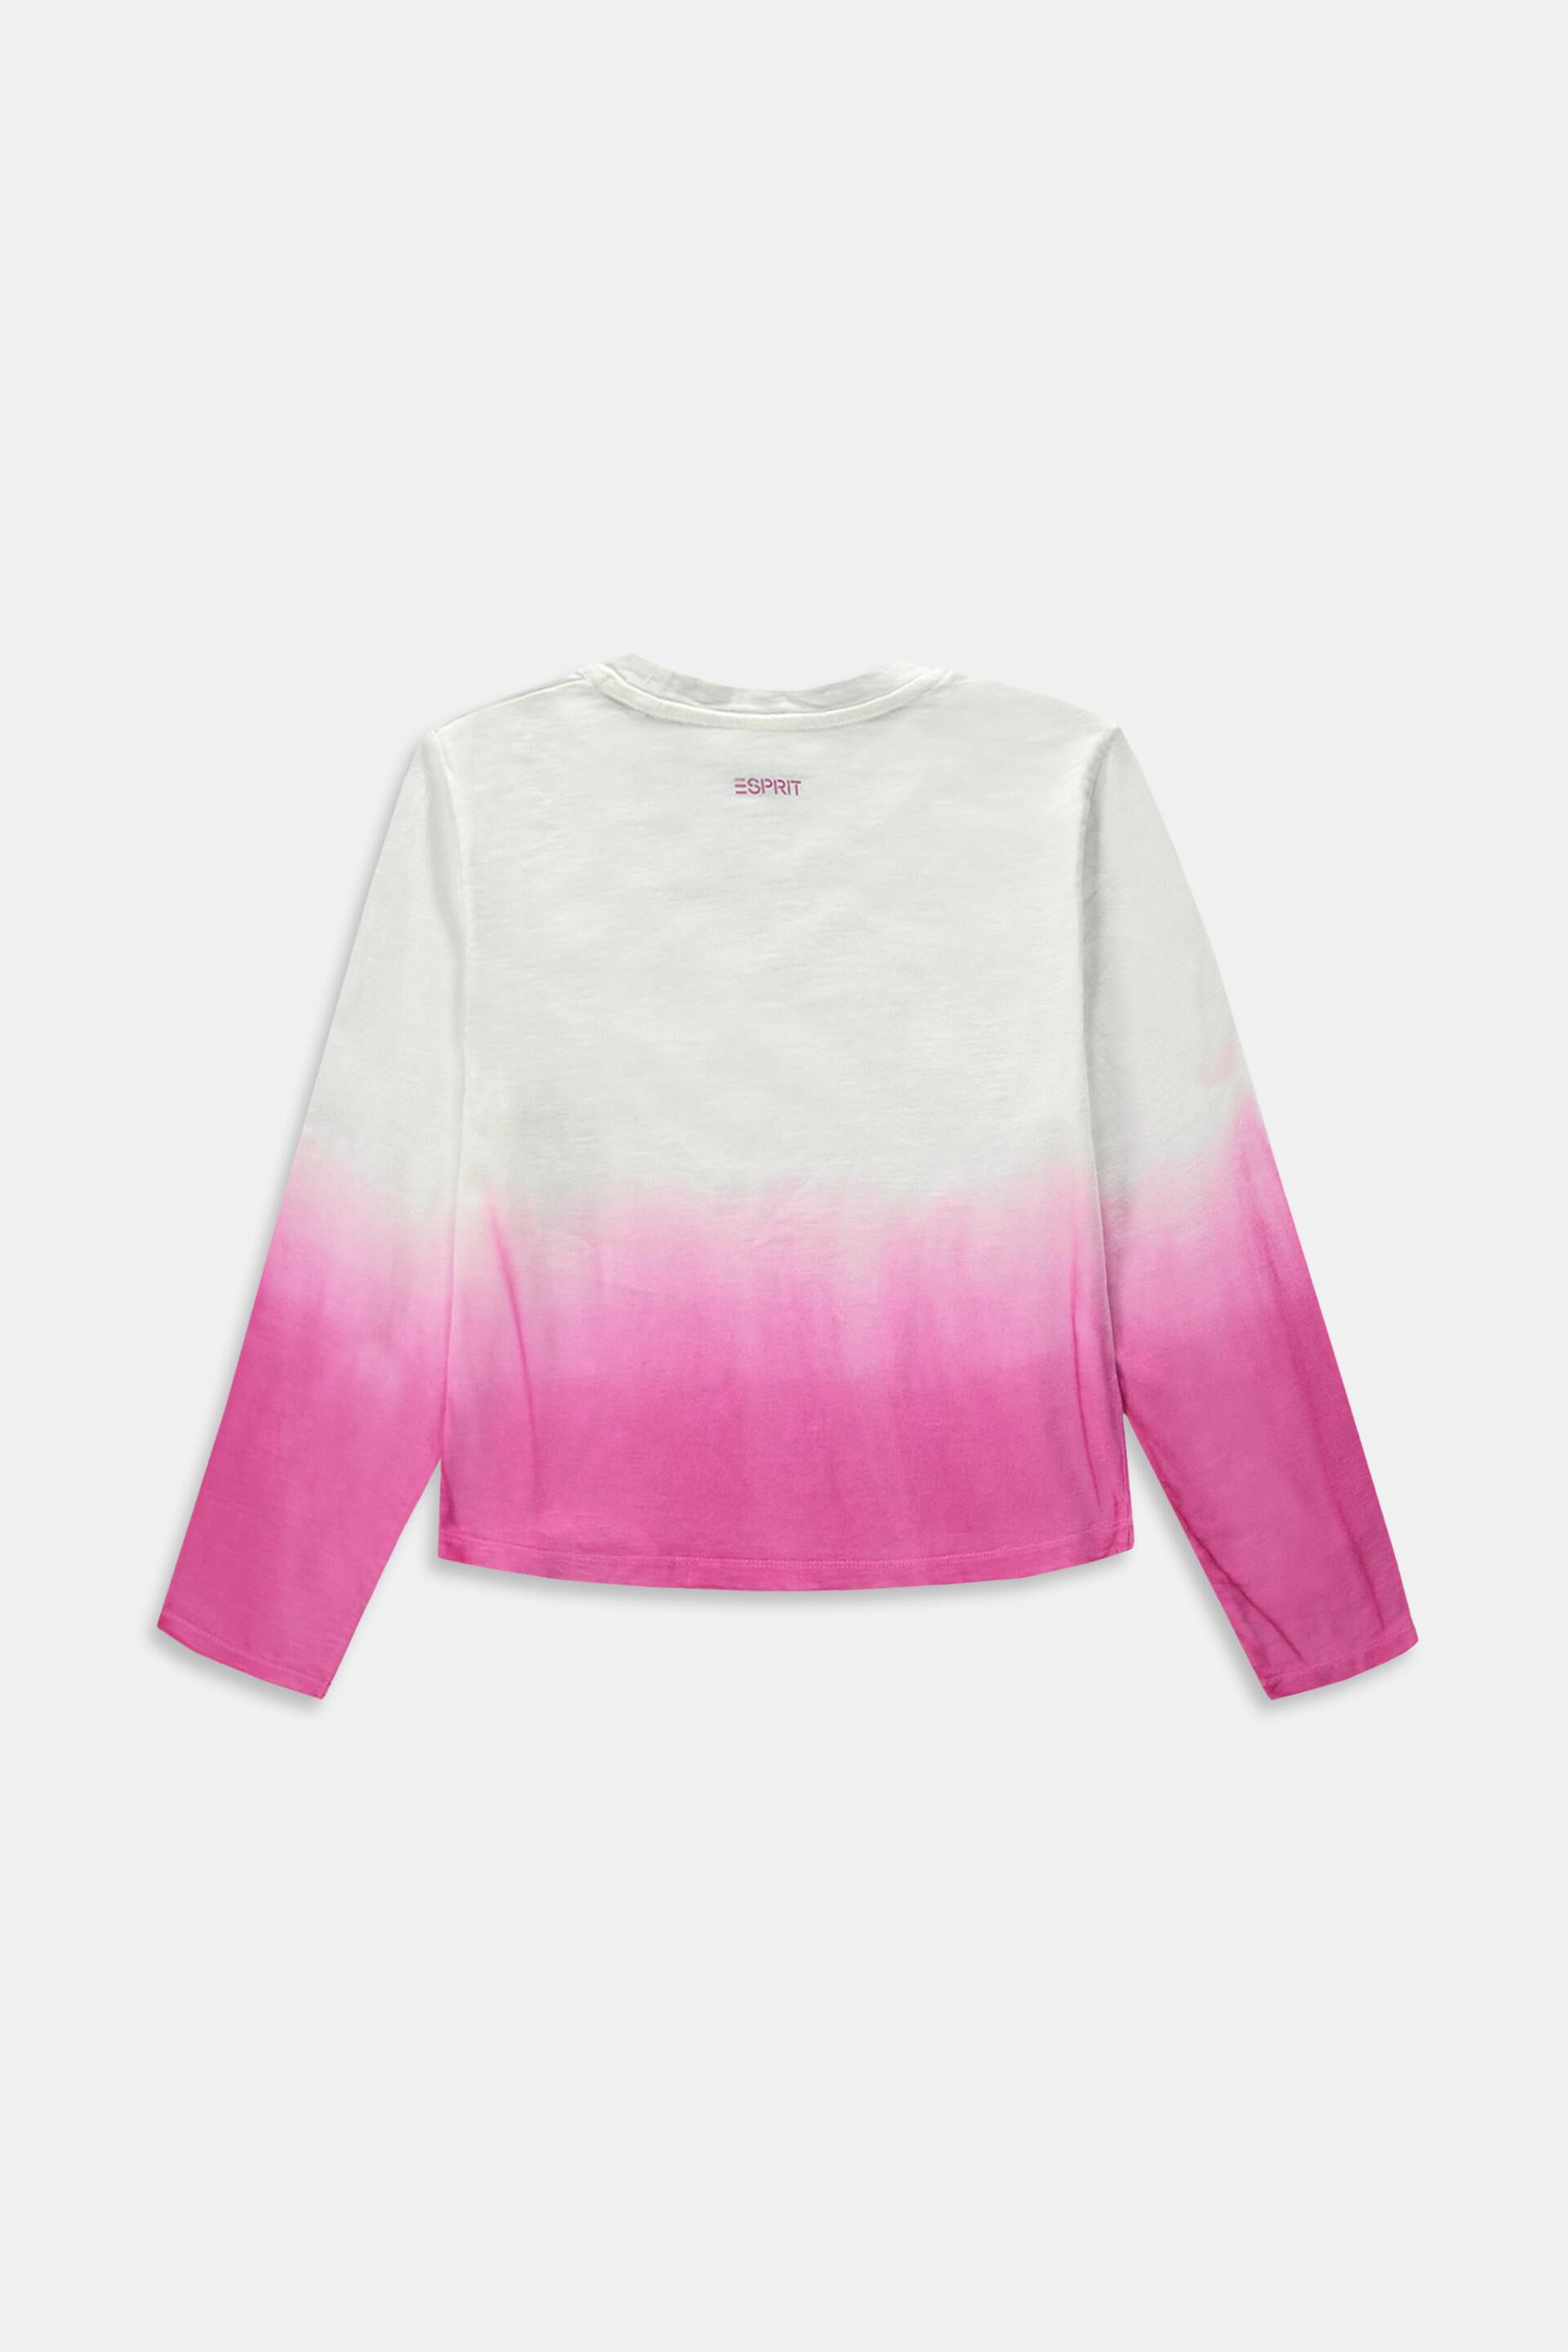 ESPRIT Mädchen T-Shirt Shirt mit Eis Print & Pailletten in rosa 300 RN1057505 